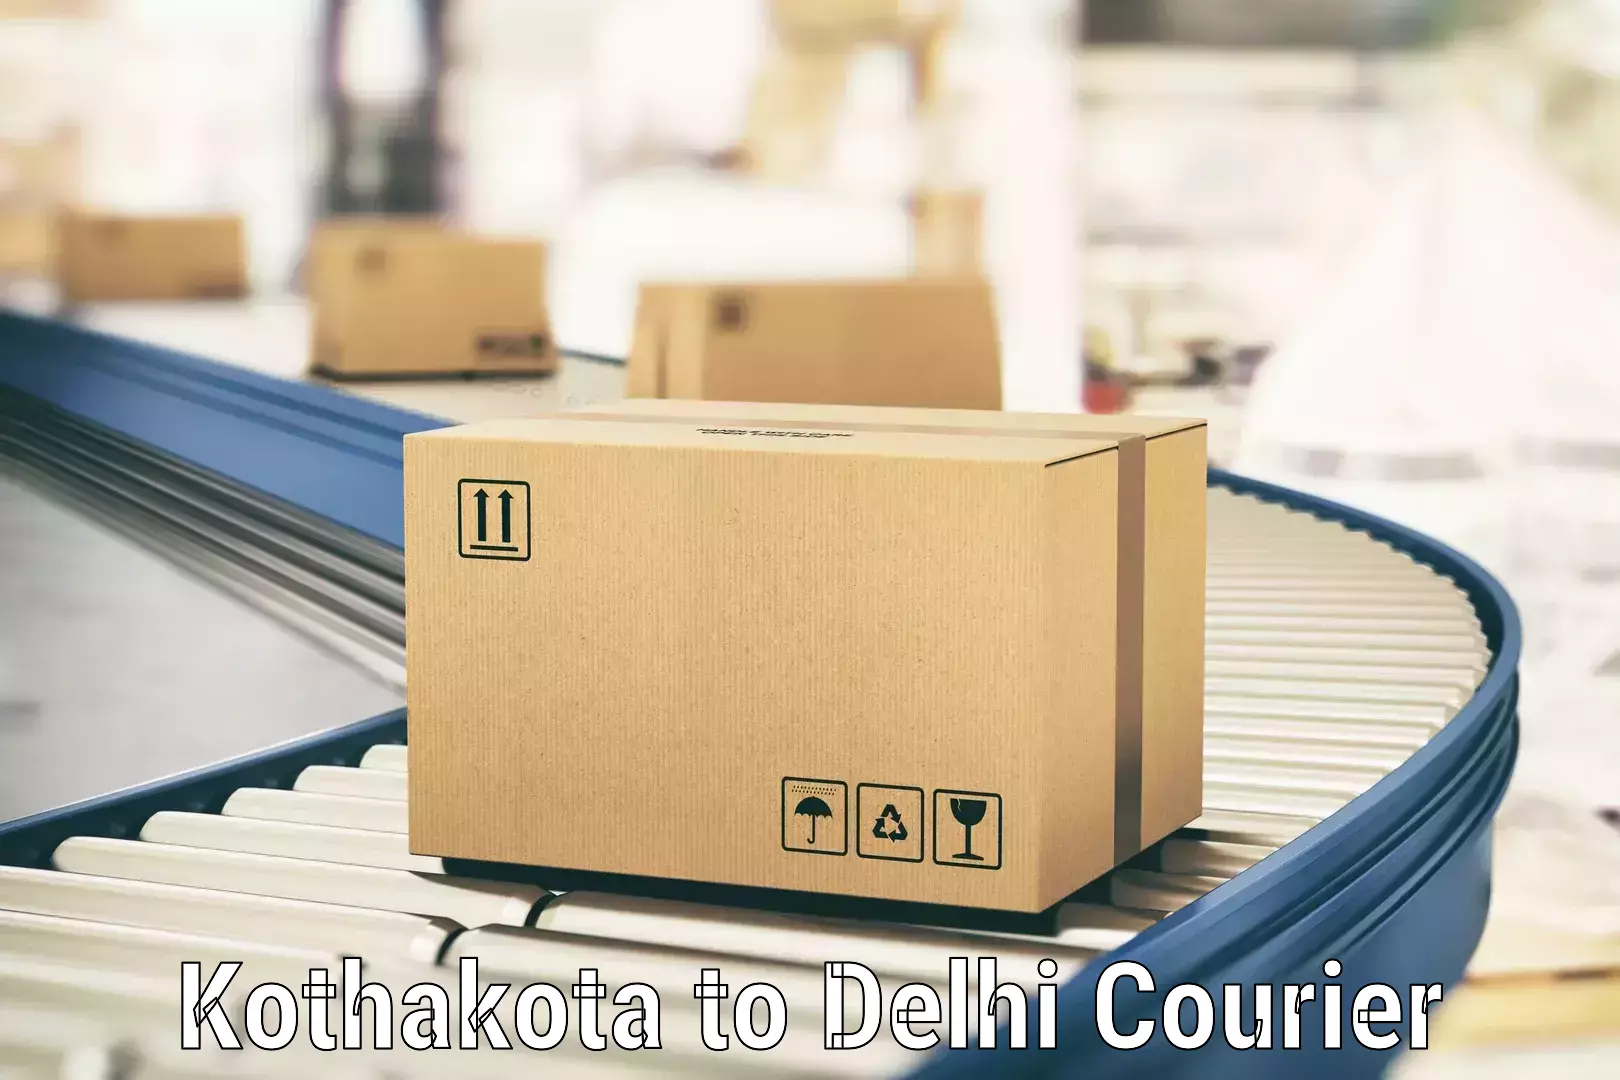 Personal courier services Kothakota to Jamia Millia Islamia New Delhi